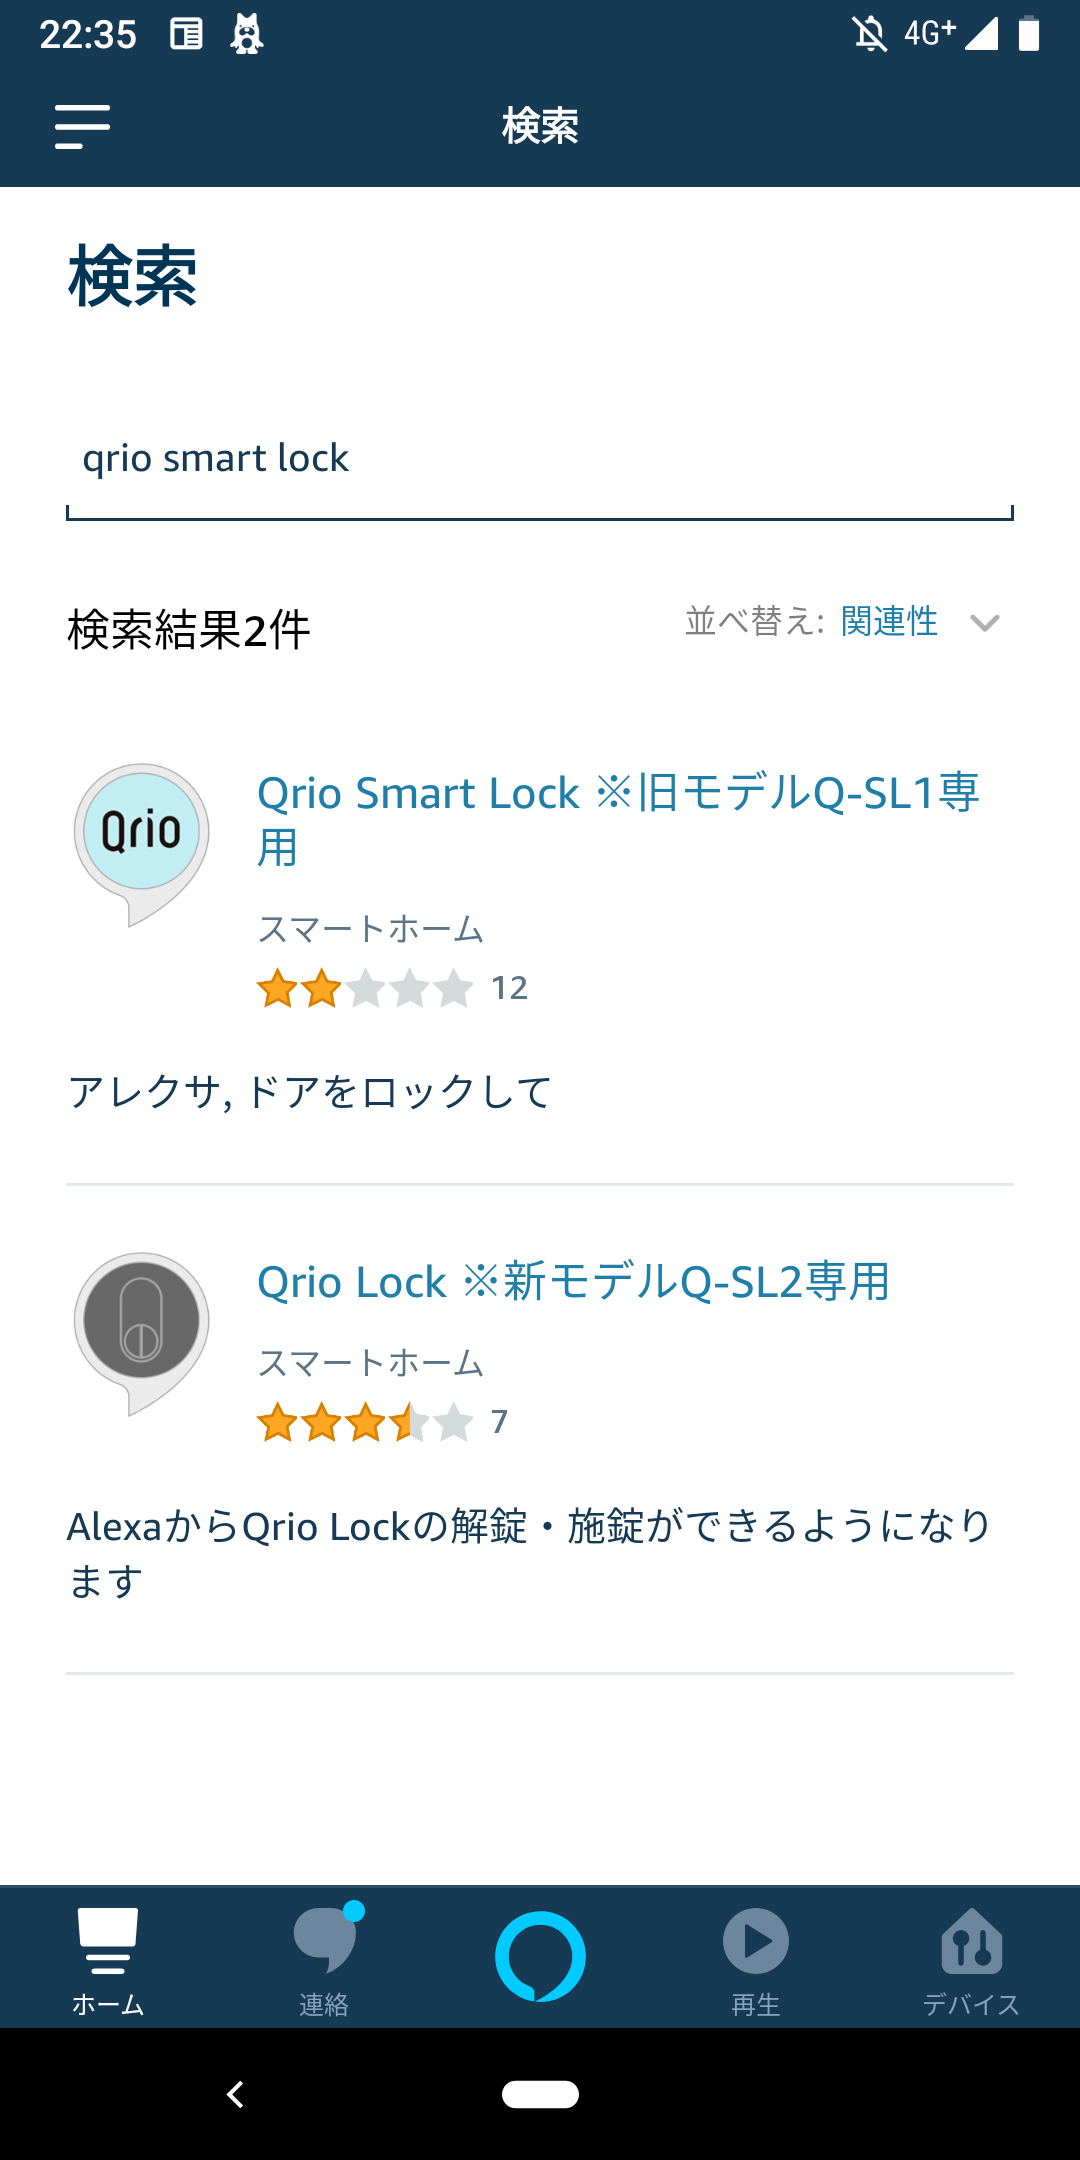 Amazon Alexa : Qrio smart lockのスキル検索画面